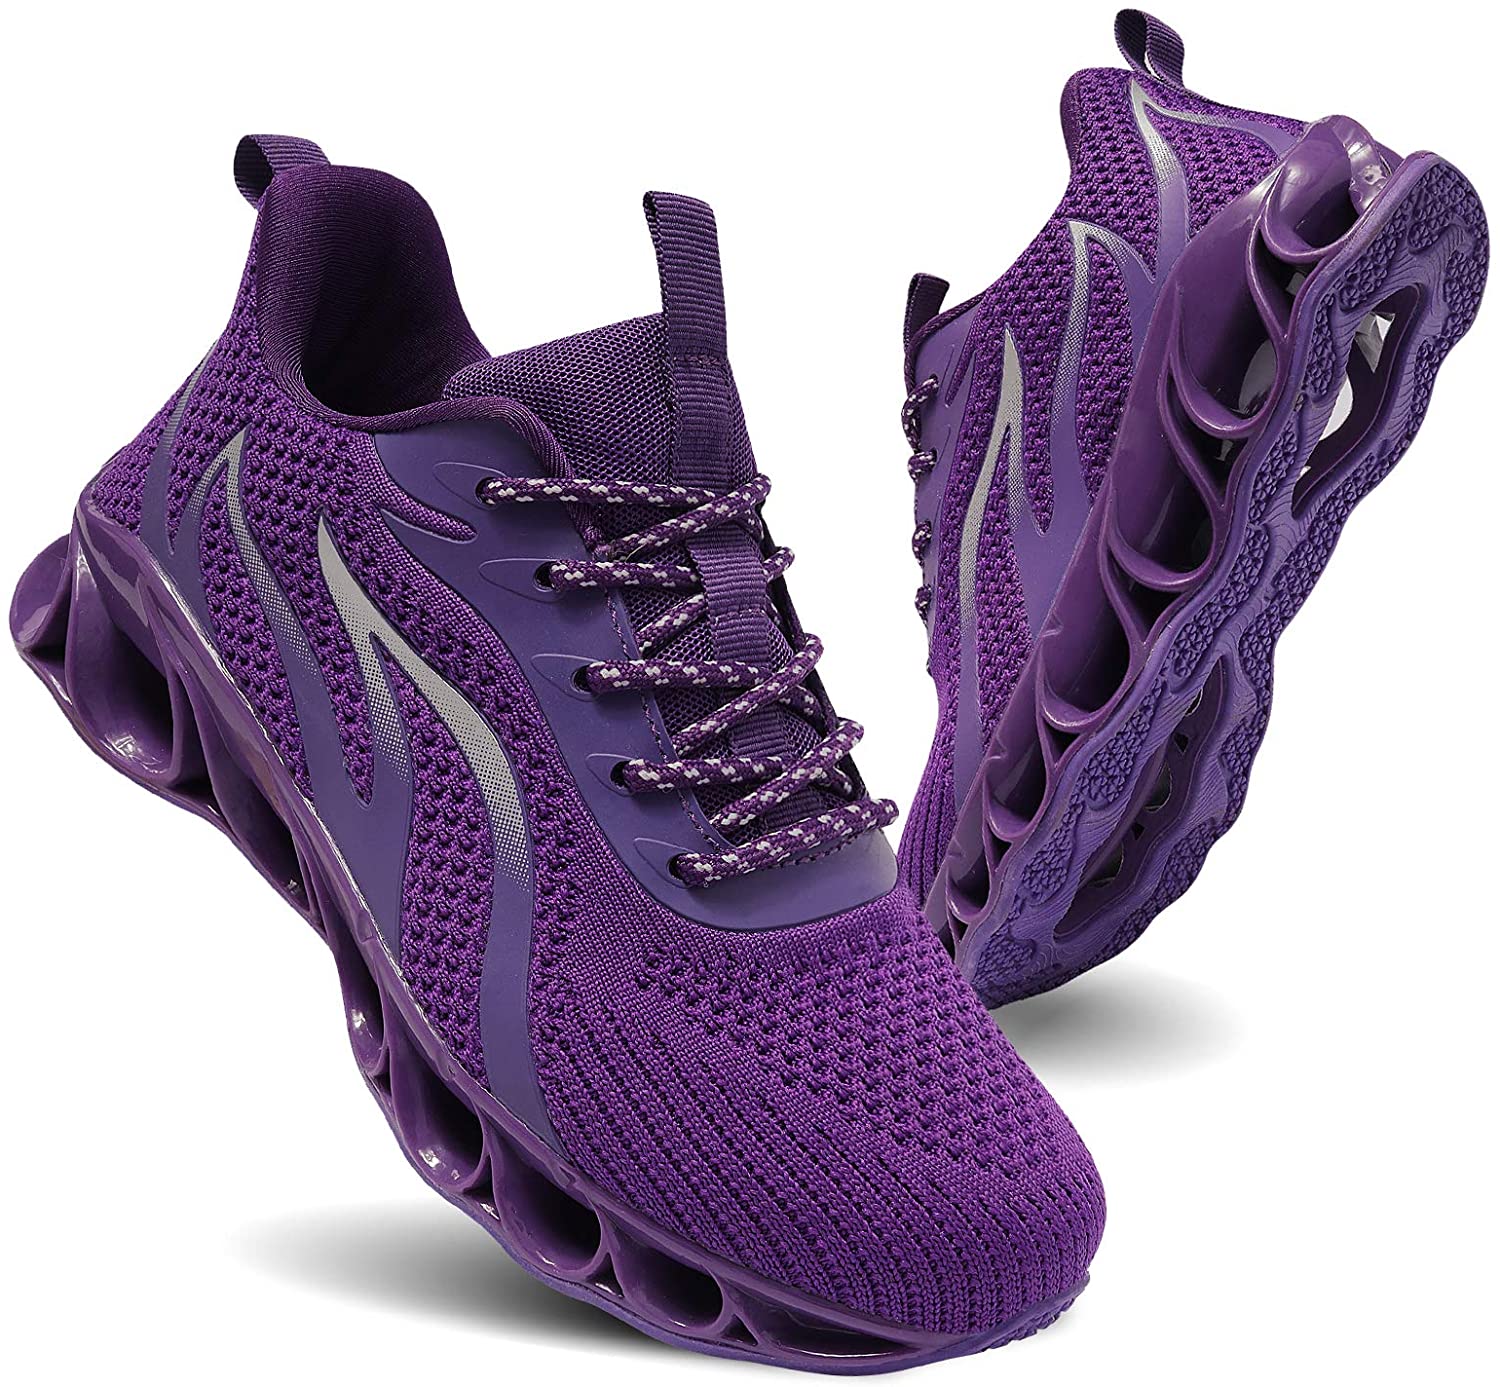 TIAMOU Running Shoes Women Walking Athletic Tennis Non Slip Blade Type ...